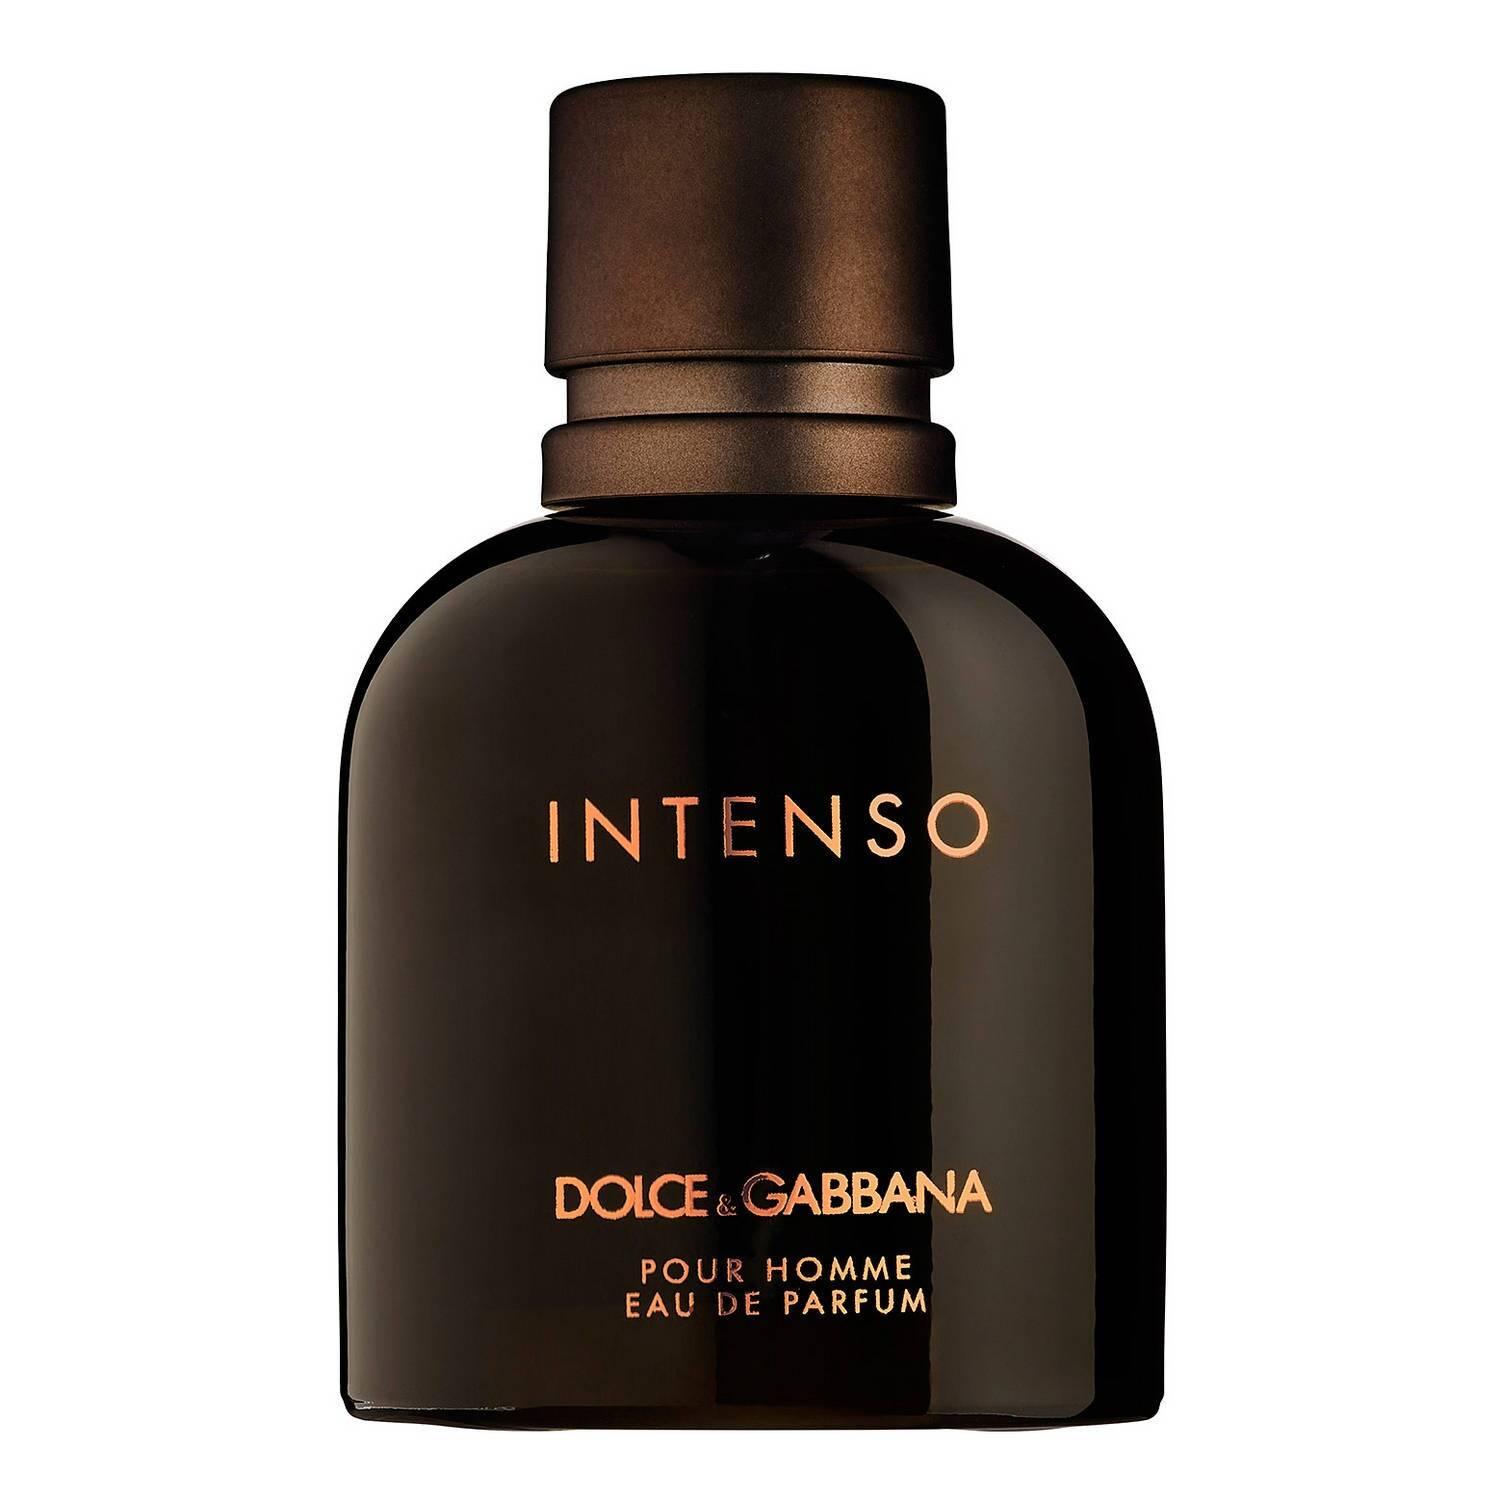 DOLCE&GABBANA Intenso Pour Homme Eau de Parfum 75ml | FEELUNIQUE